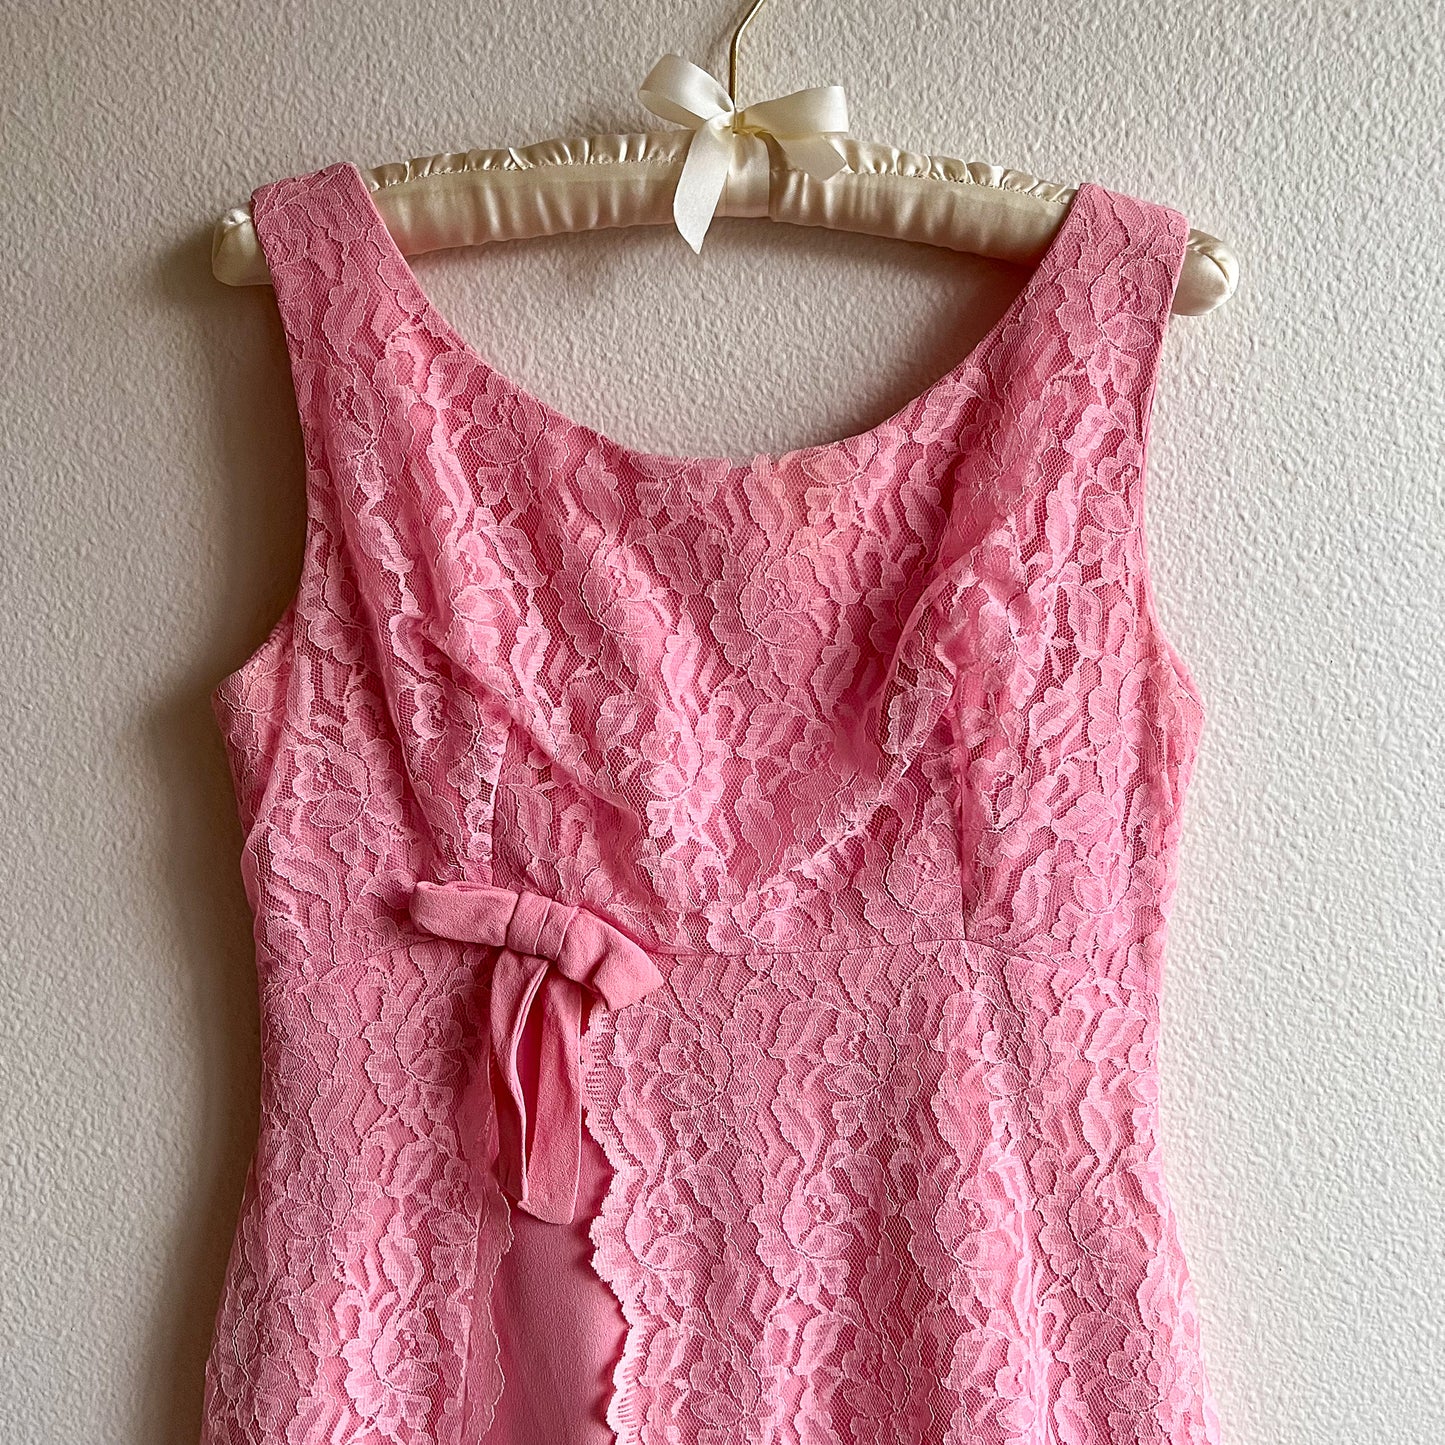 1960s Bubblegum Pink Rayon and Lace Mini Dress (S/M)